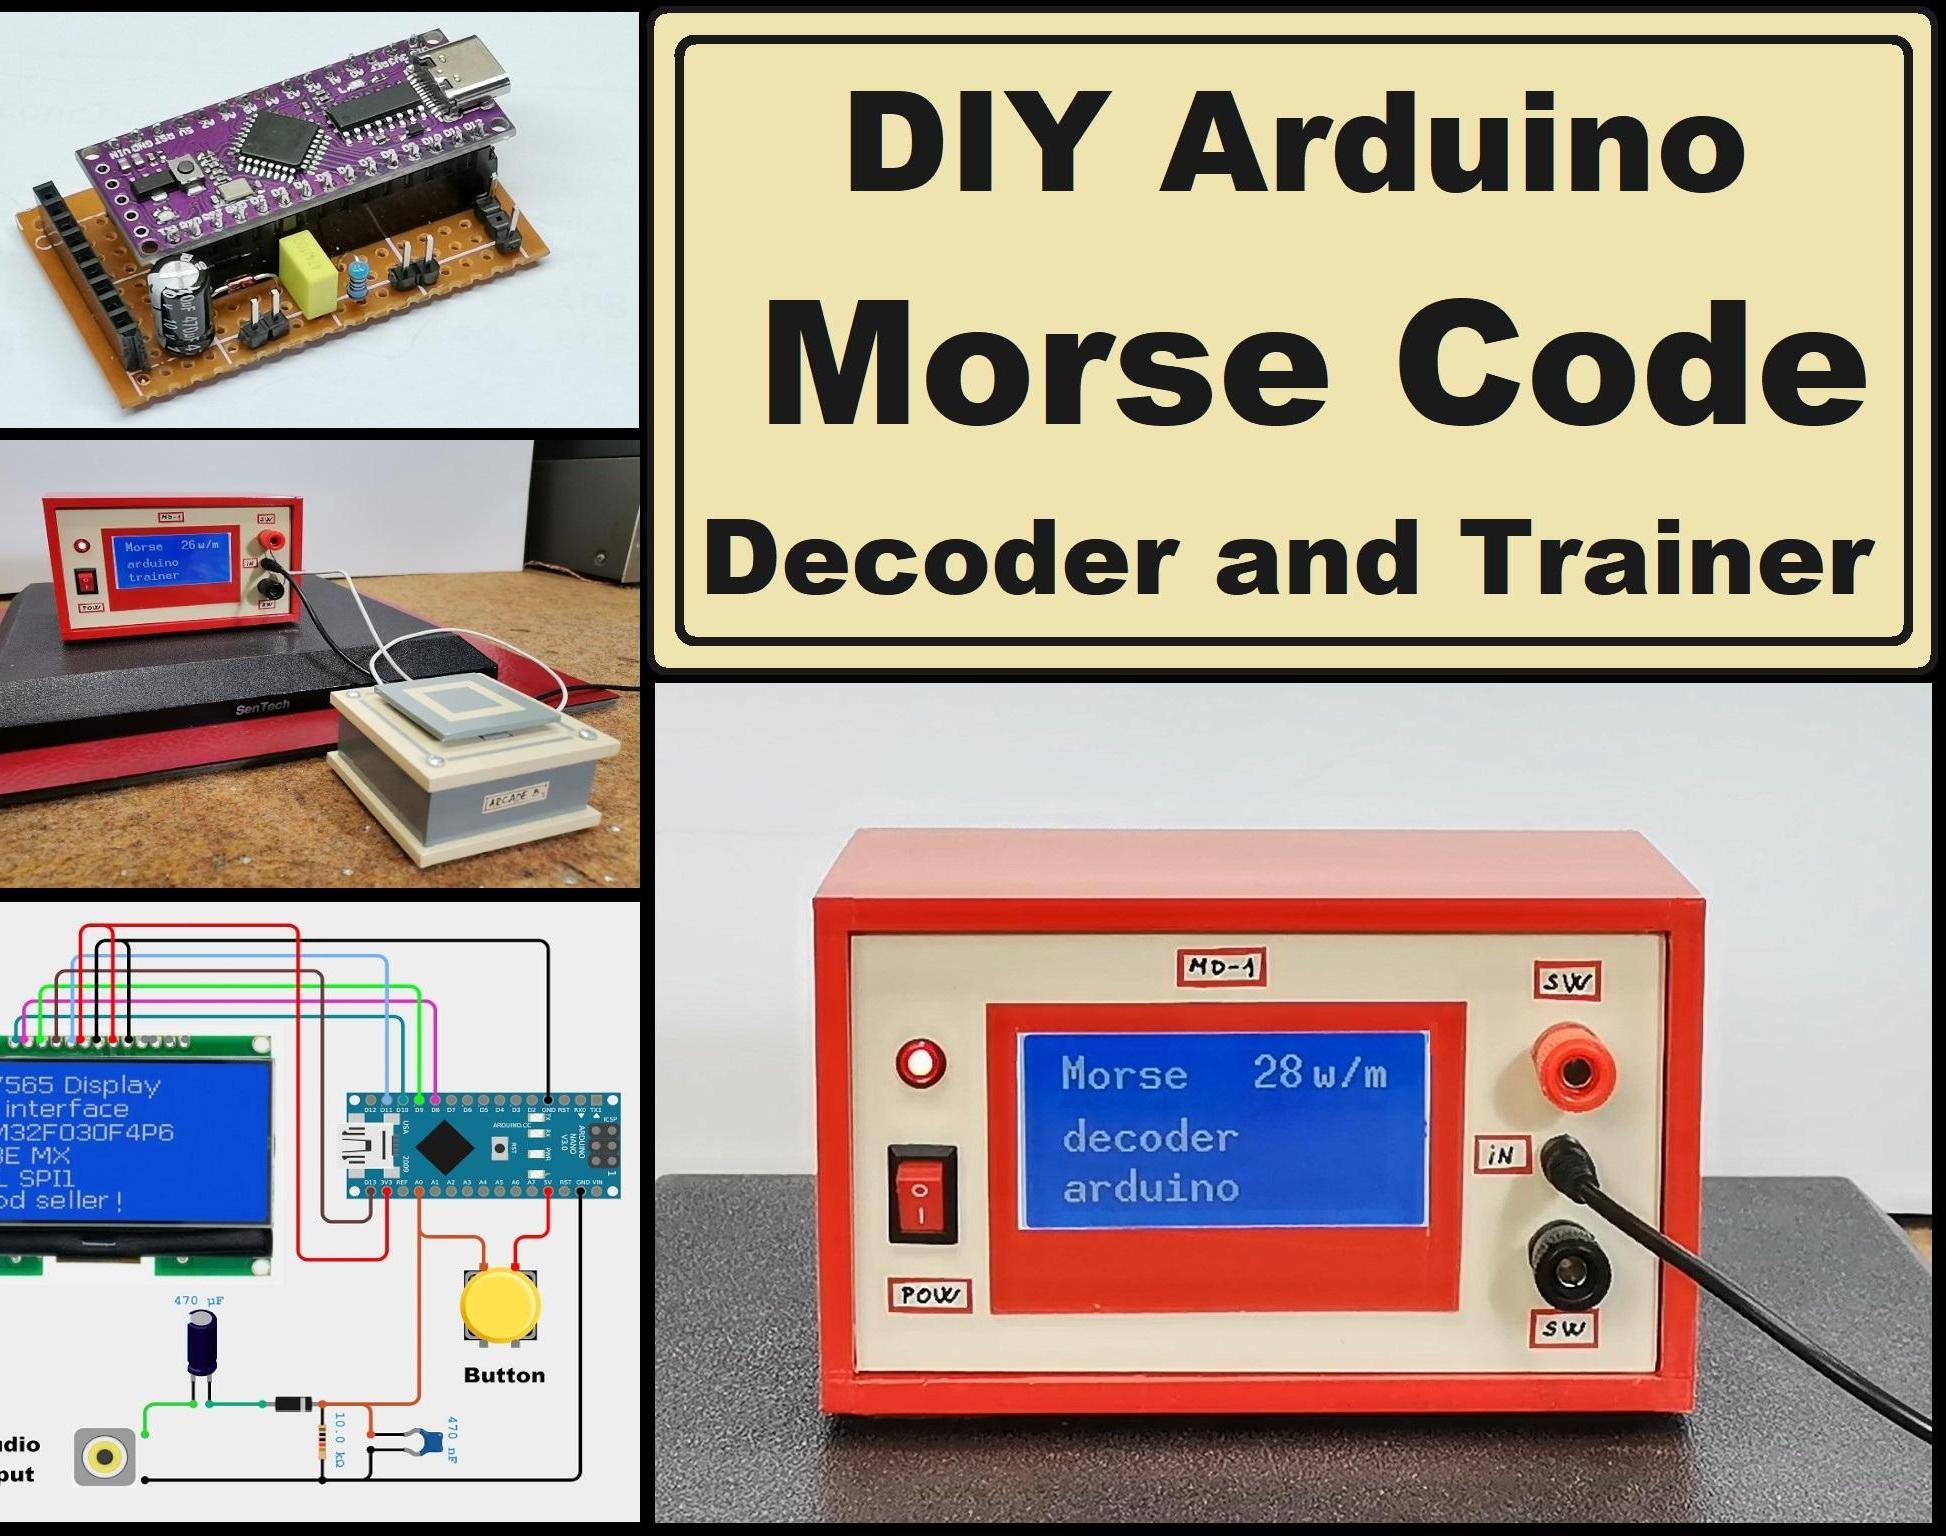 DIY Arduino Morse Code Decoder and Trainer